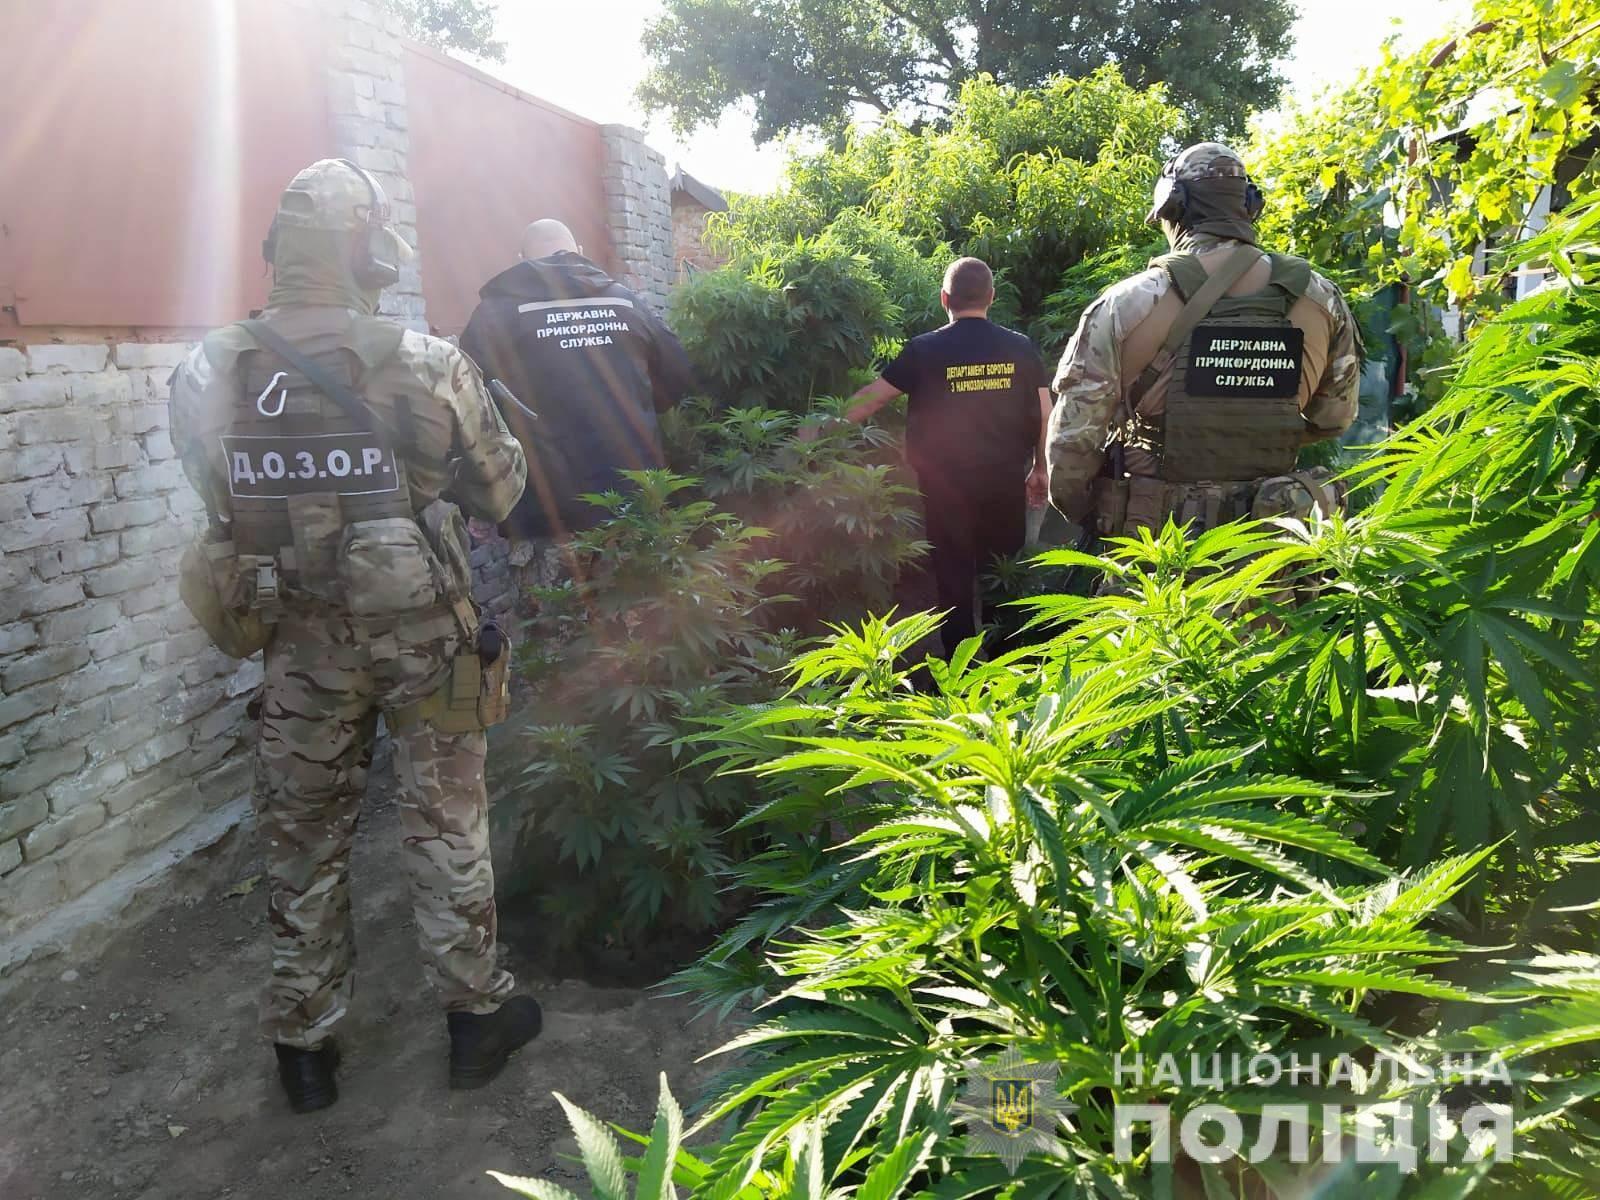 Правоохоронці Одещини викрили п’ятьох жителів Ізмаїльського району в протиправній діяльності, пов’язаній з обігом наркотичних засобів, боєприпасів та безакцизного товару